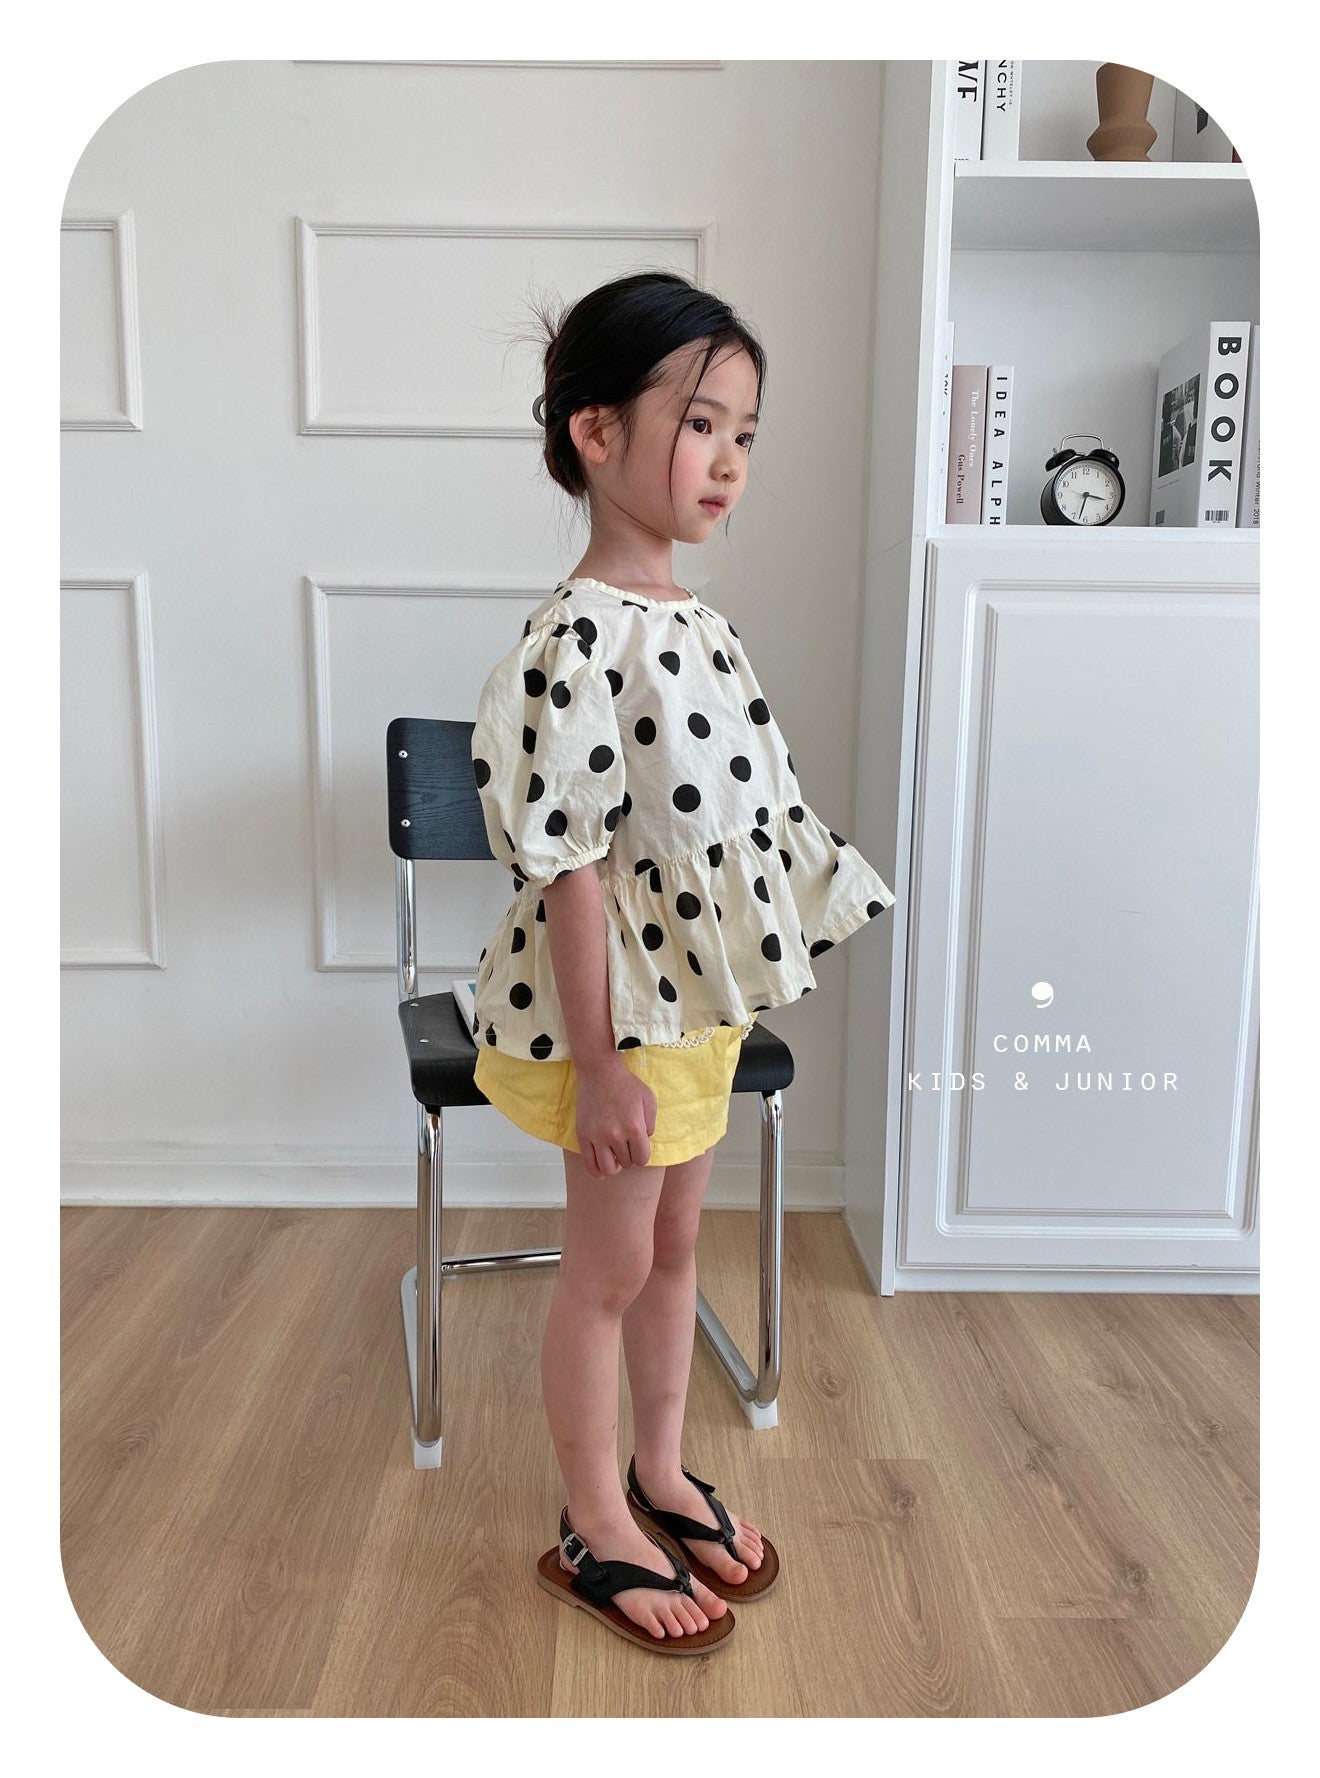 【注文後取り寄せ】韓国子供服 Comma 女の子 子供服  水玉模様ブラウス 2色 90-150サイズ